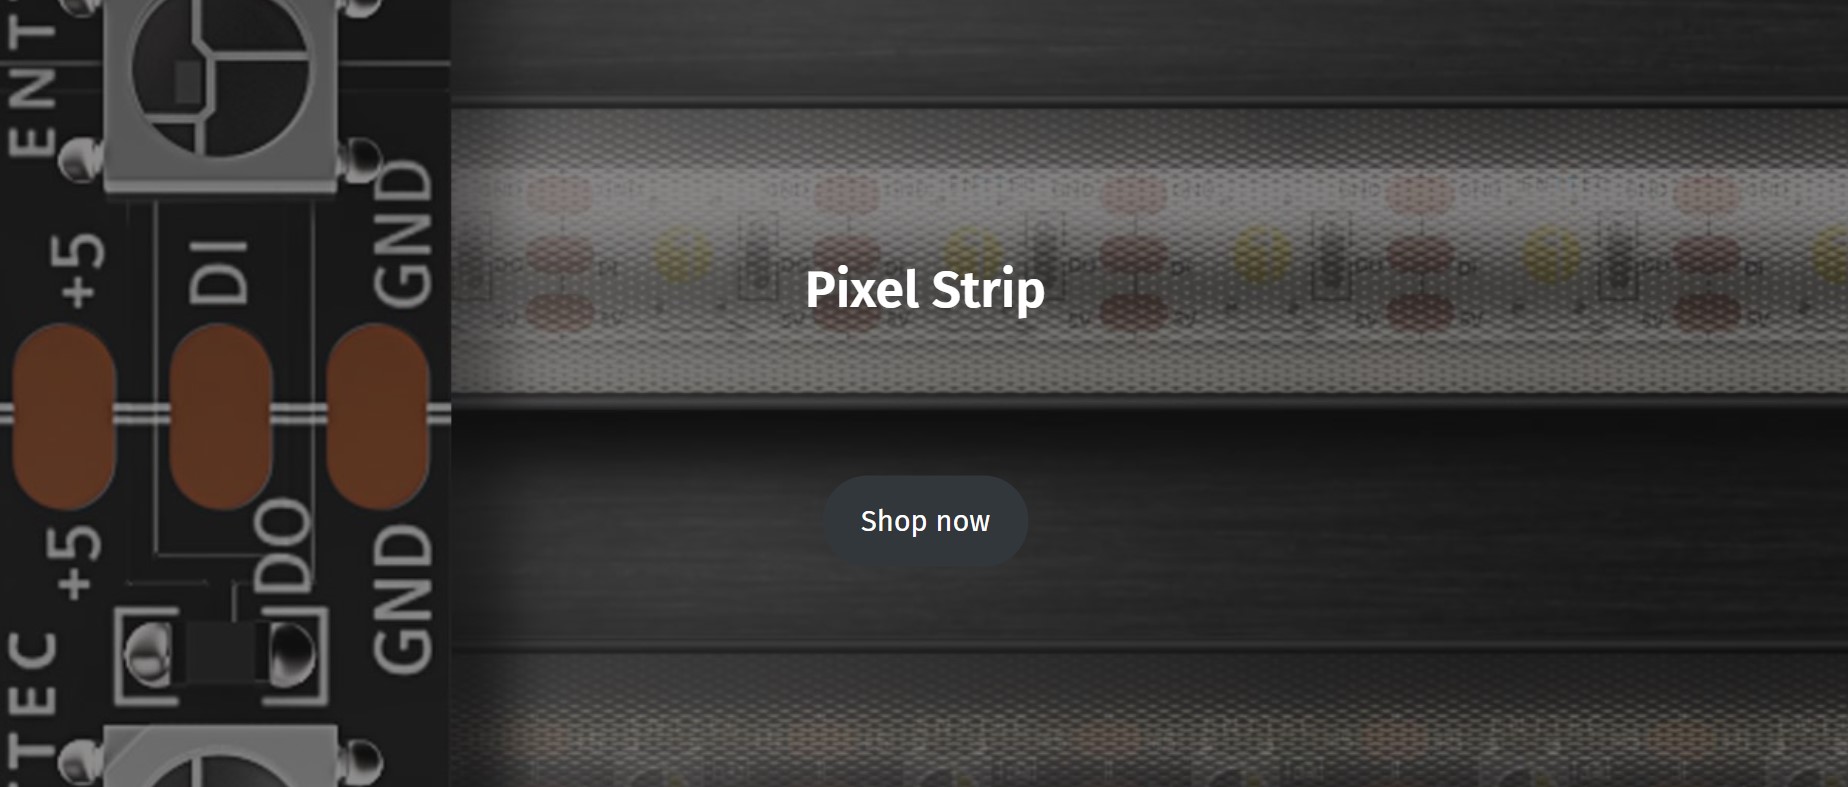 Pixel strip